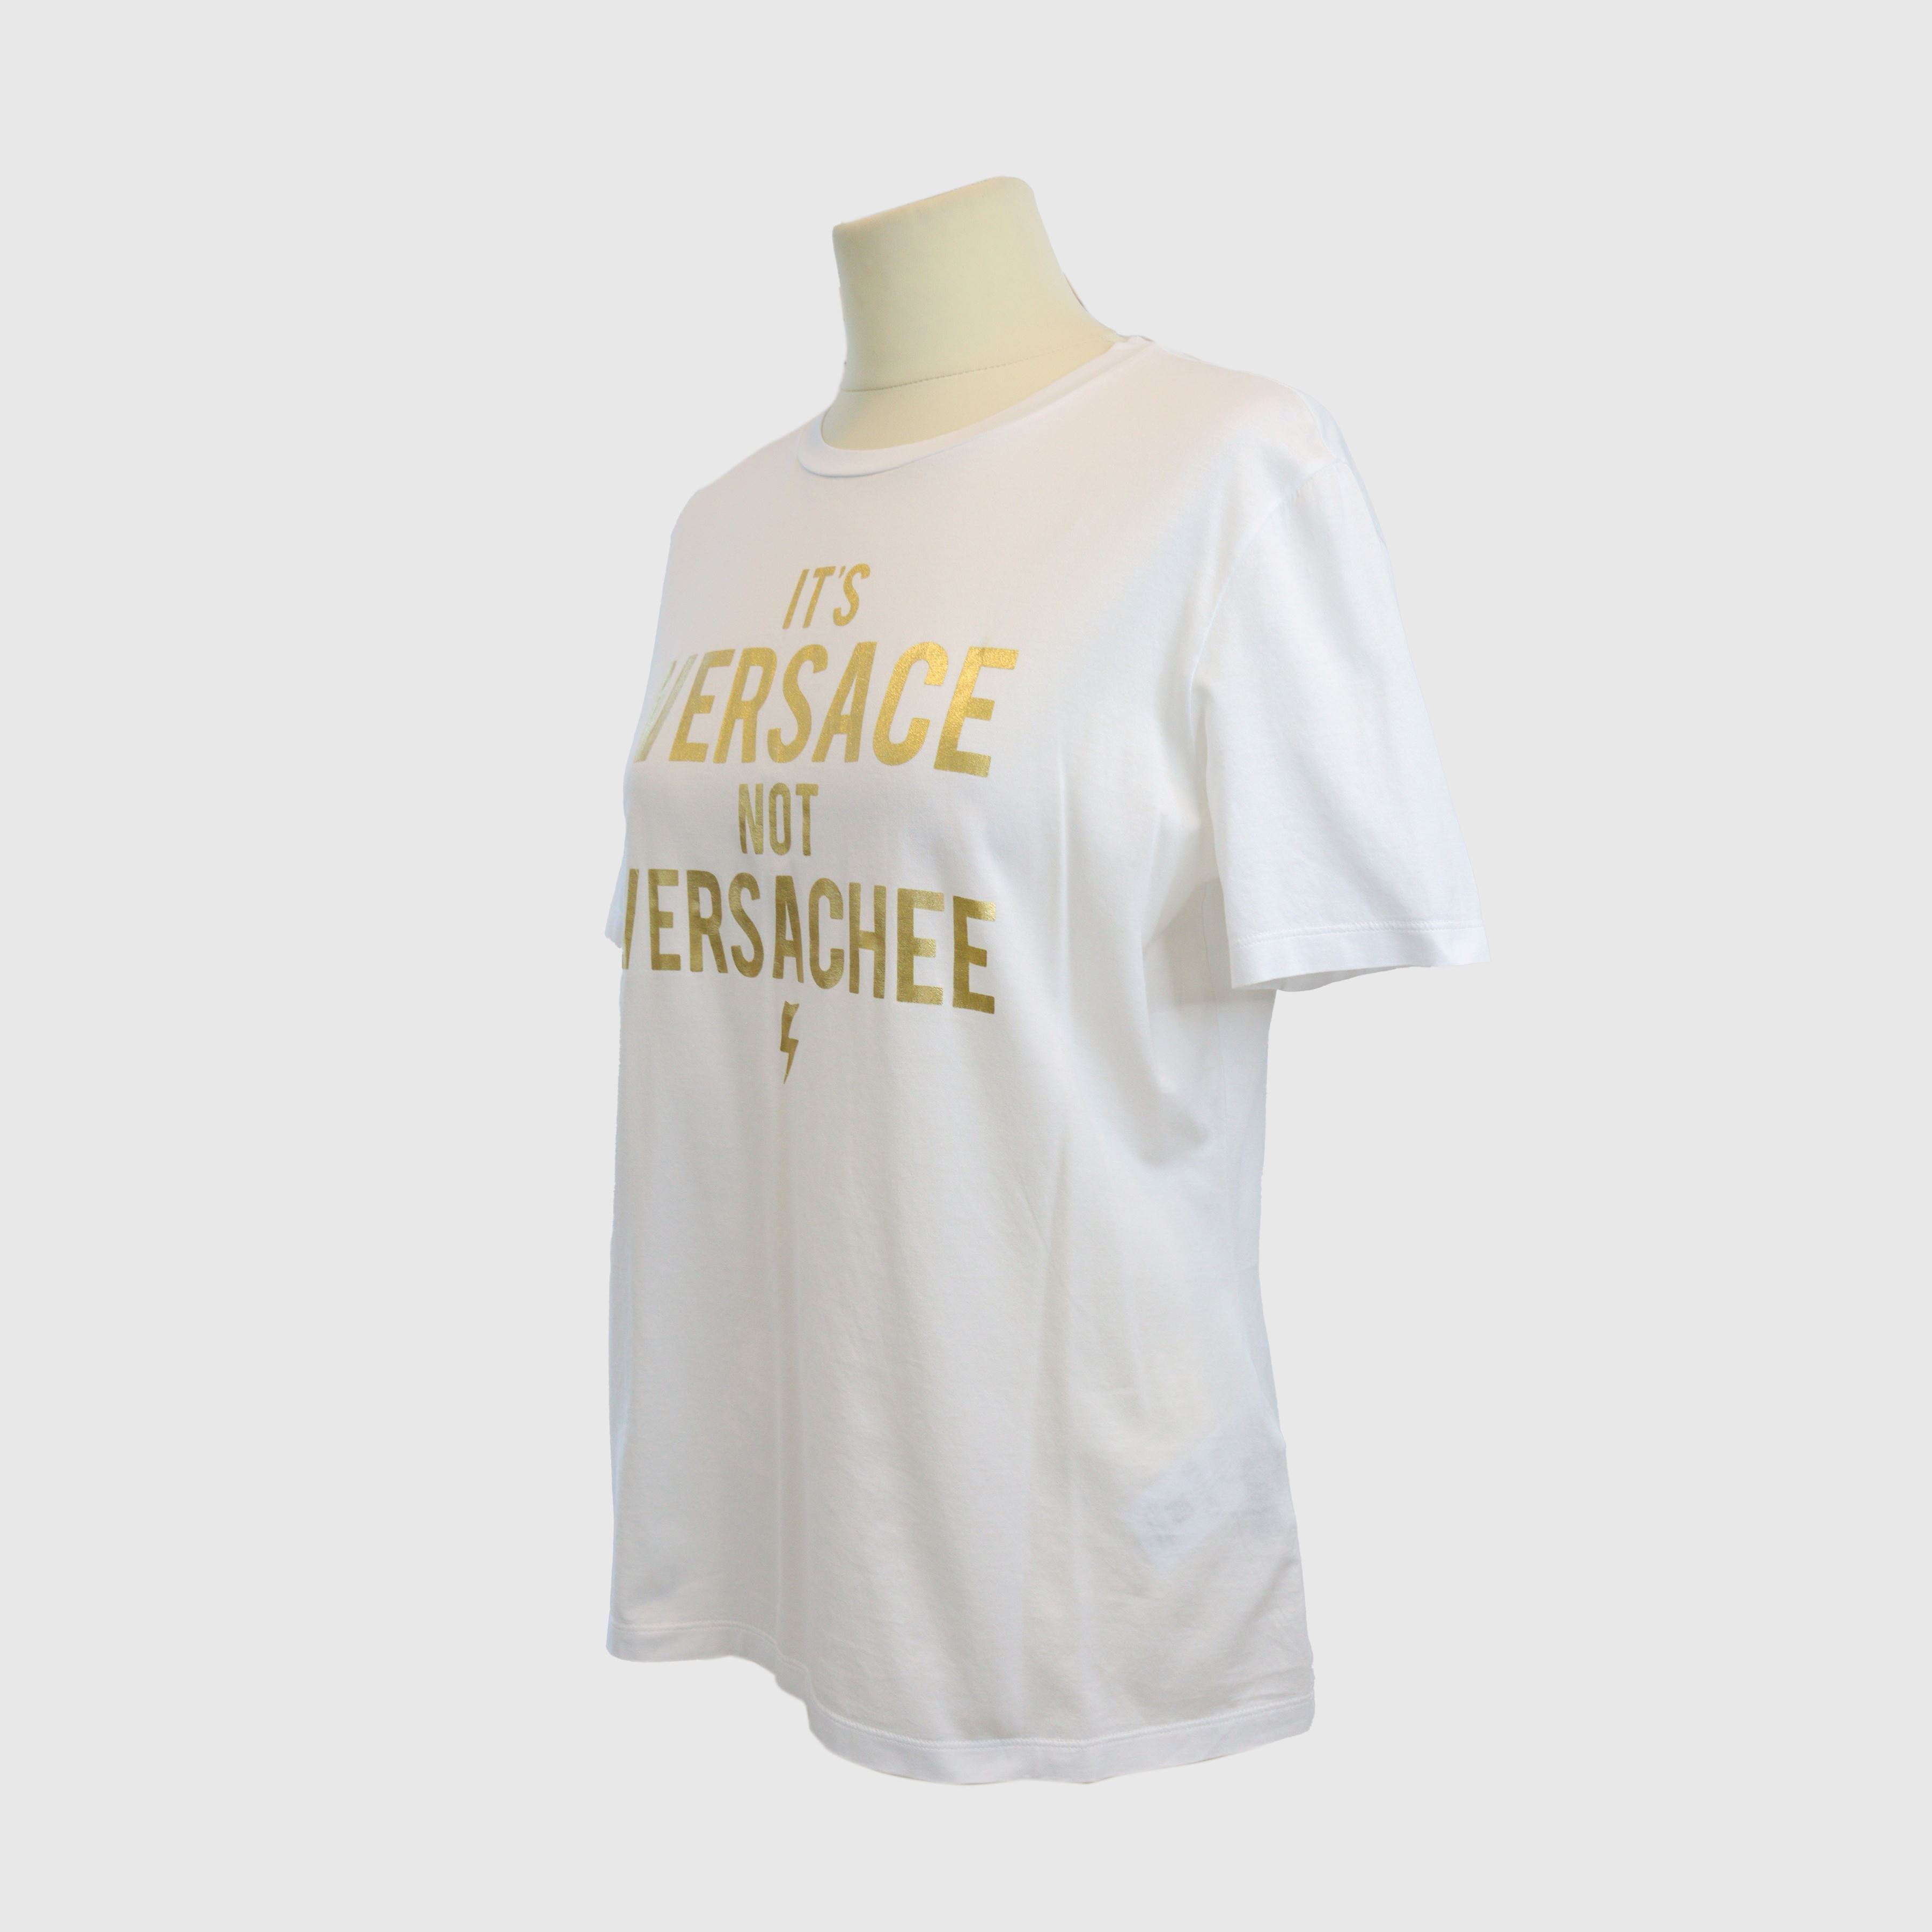 White/Gold "Its Versace not Versachee" Tshirt Clothing Versace 